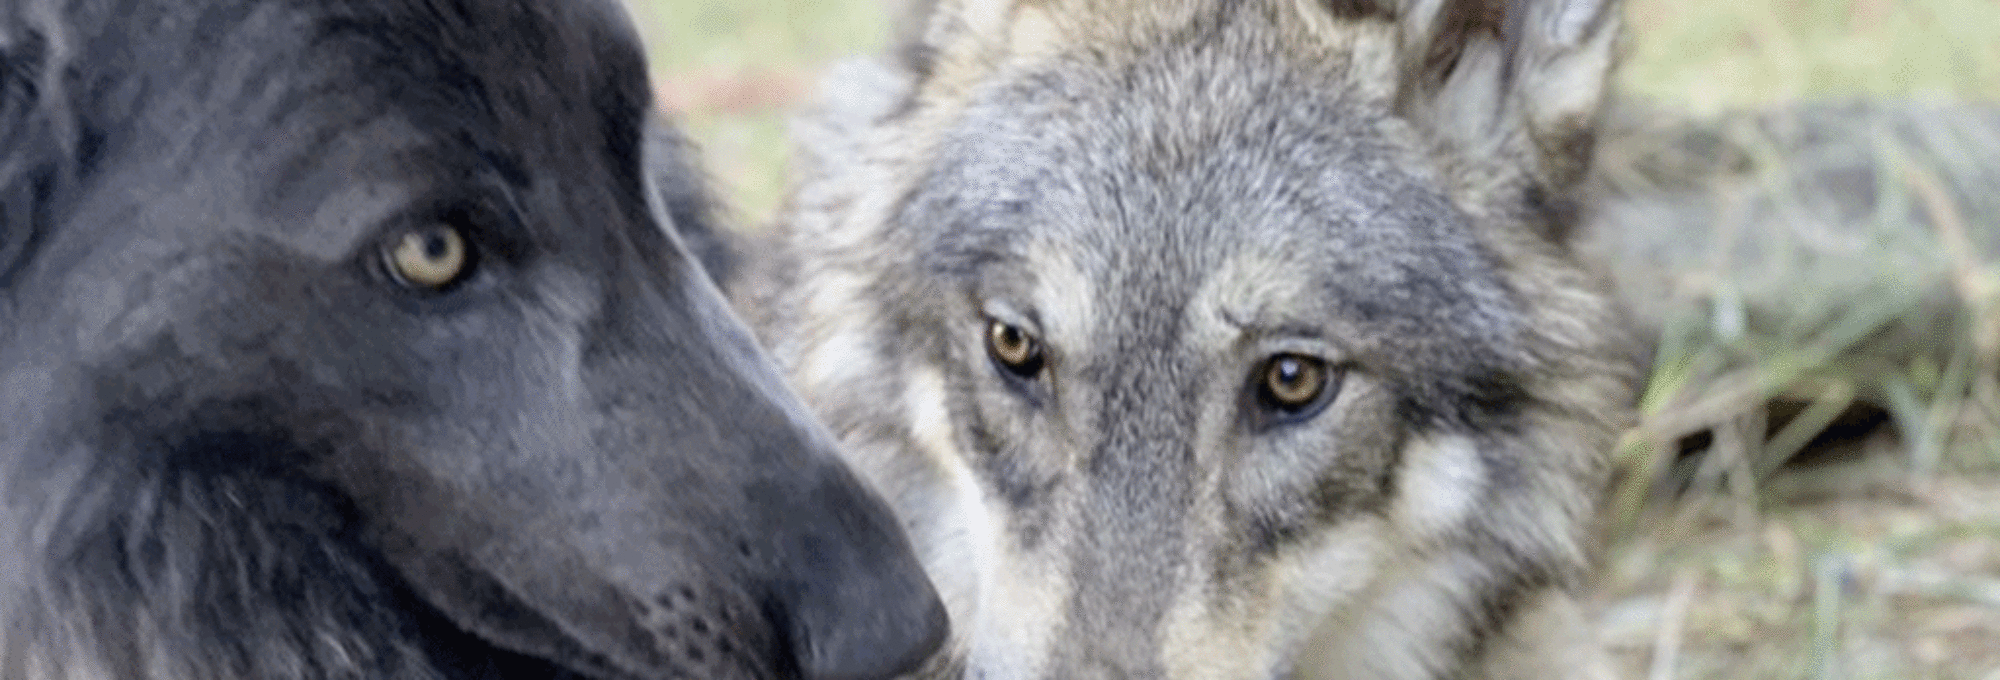 リアルウルフドッグ狼犬 ローズウルフ オオカミ犬についての説明および ローズウルフの説明をしています